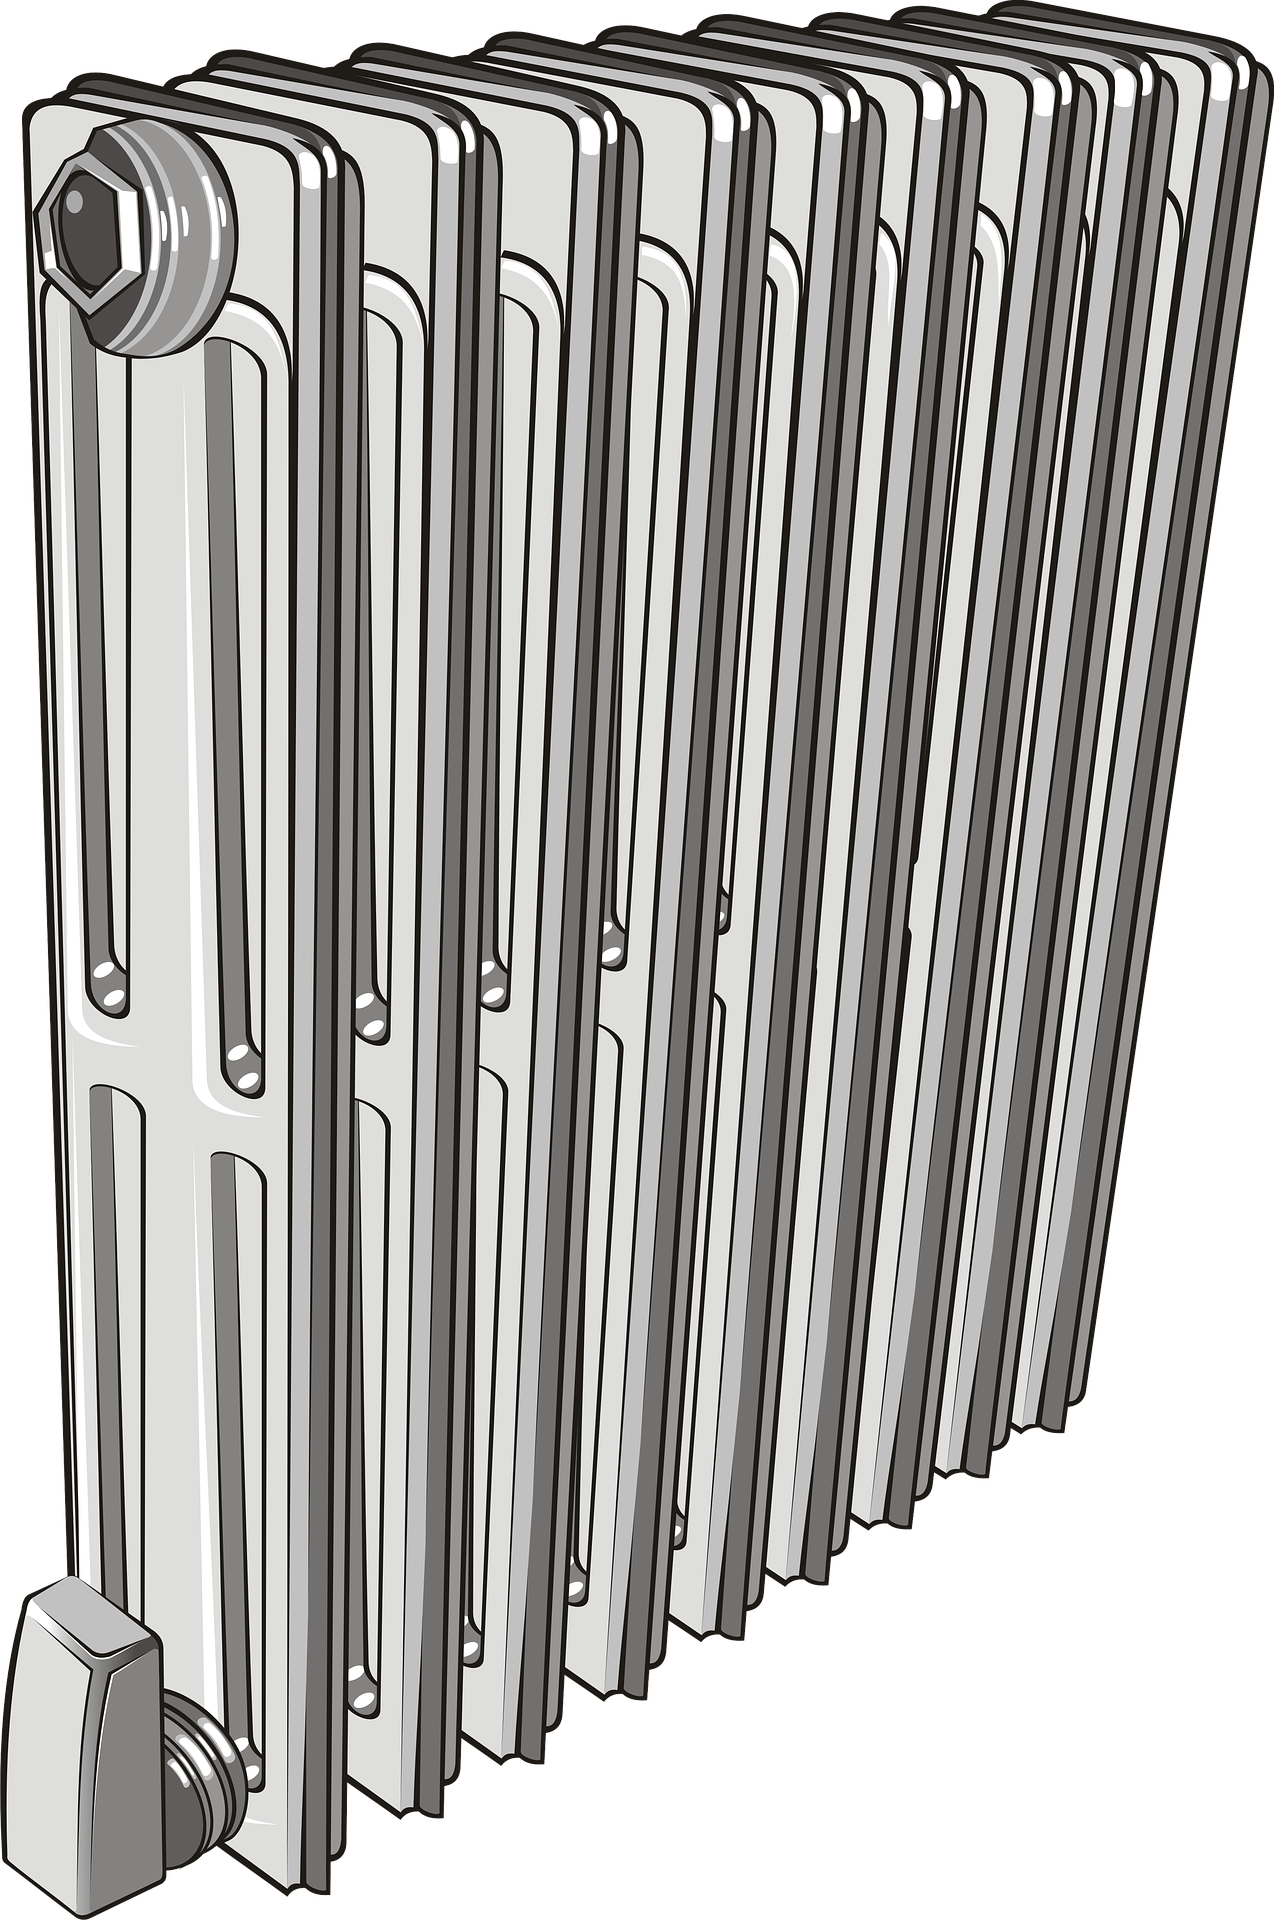 Olejový radiátor – co to je a kdy se vyplatí ho koupit